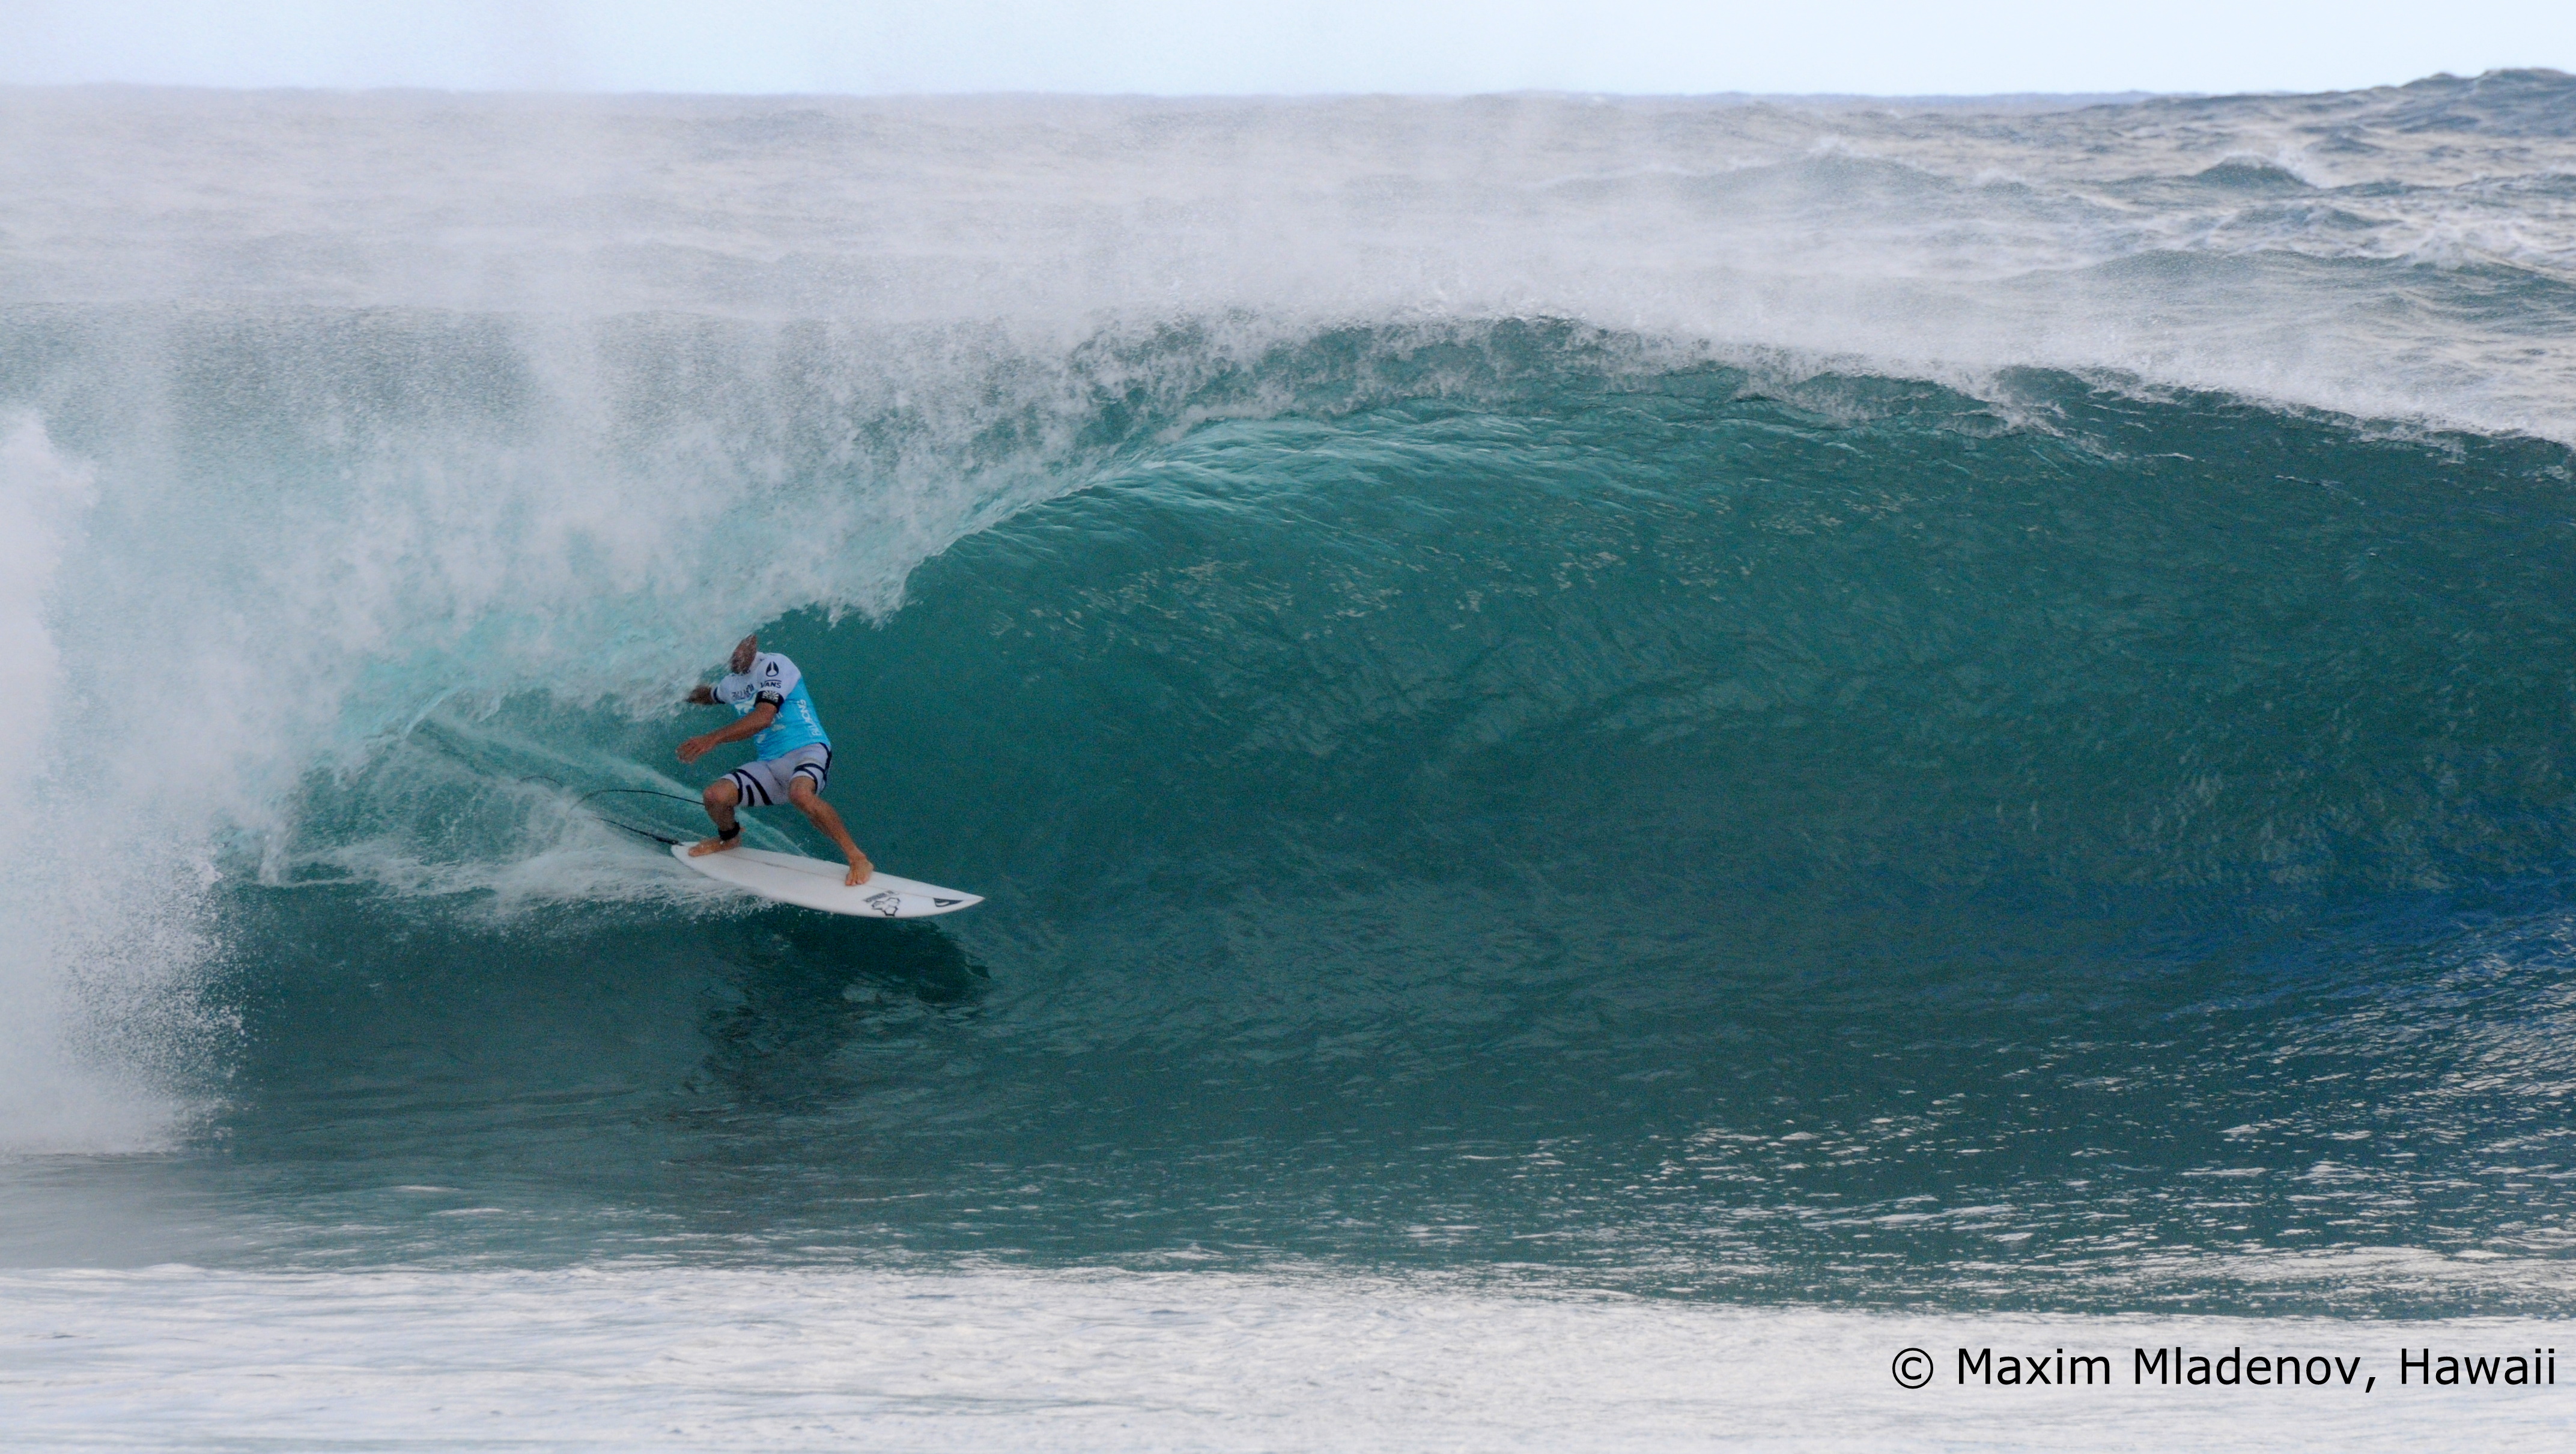 Slater bien câlé dans le barrel joue de son expérience lors de son affrontement avec John Florence, 09-12-2011 © Maxim Mladenov, Hawaii